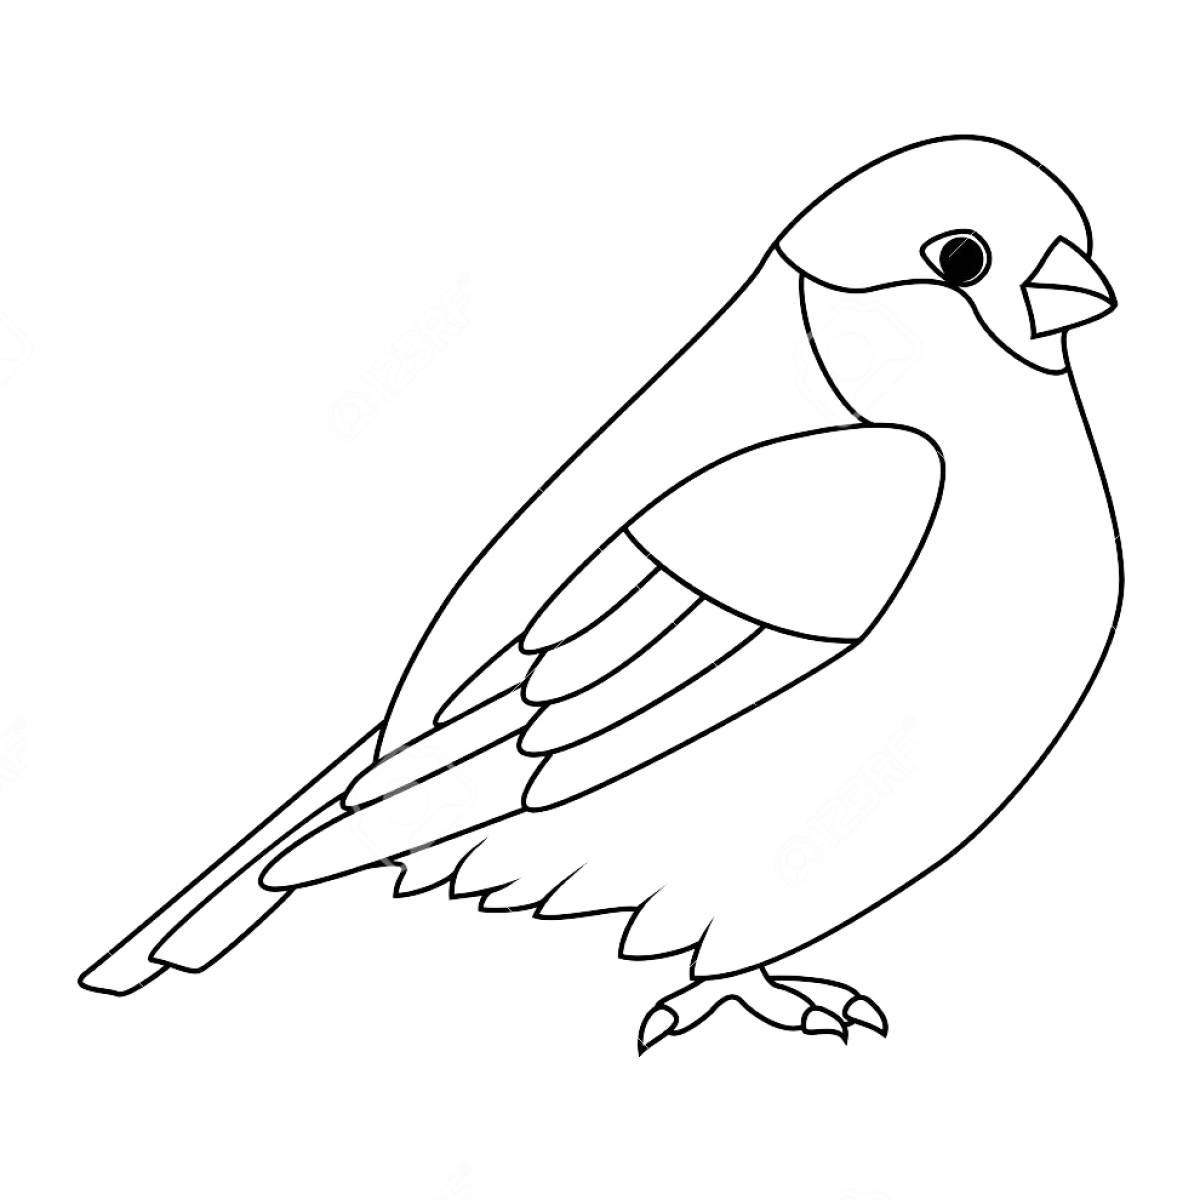 Bullfinch bird